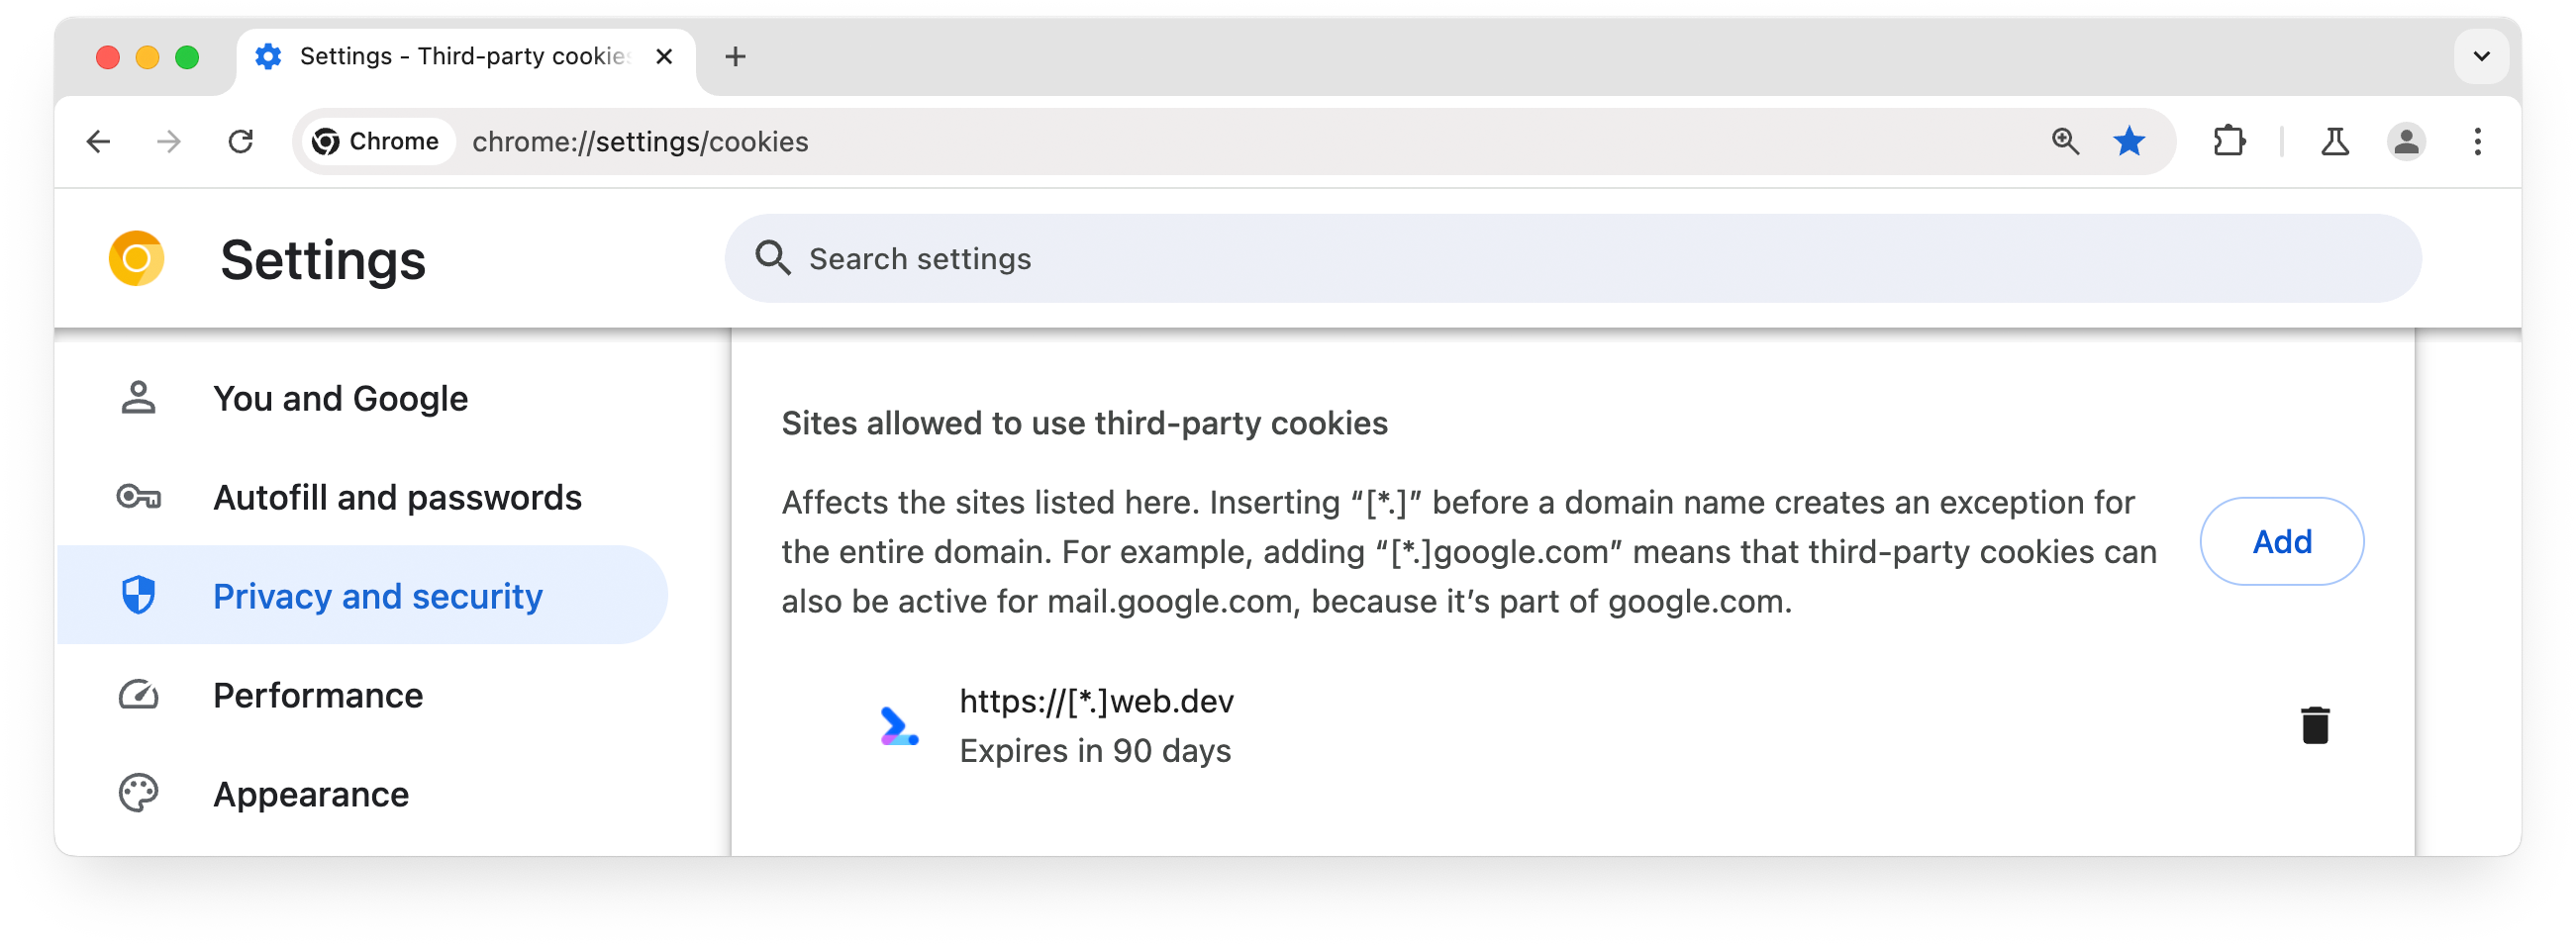 서드 파티 쿠키를 사용할 수 있는 사이트를 보여주는 chrome://settings 페이지